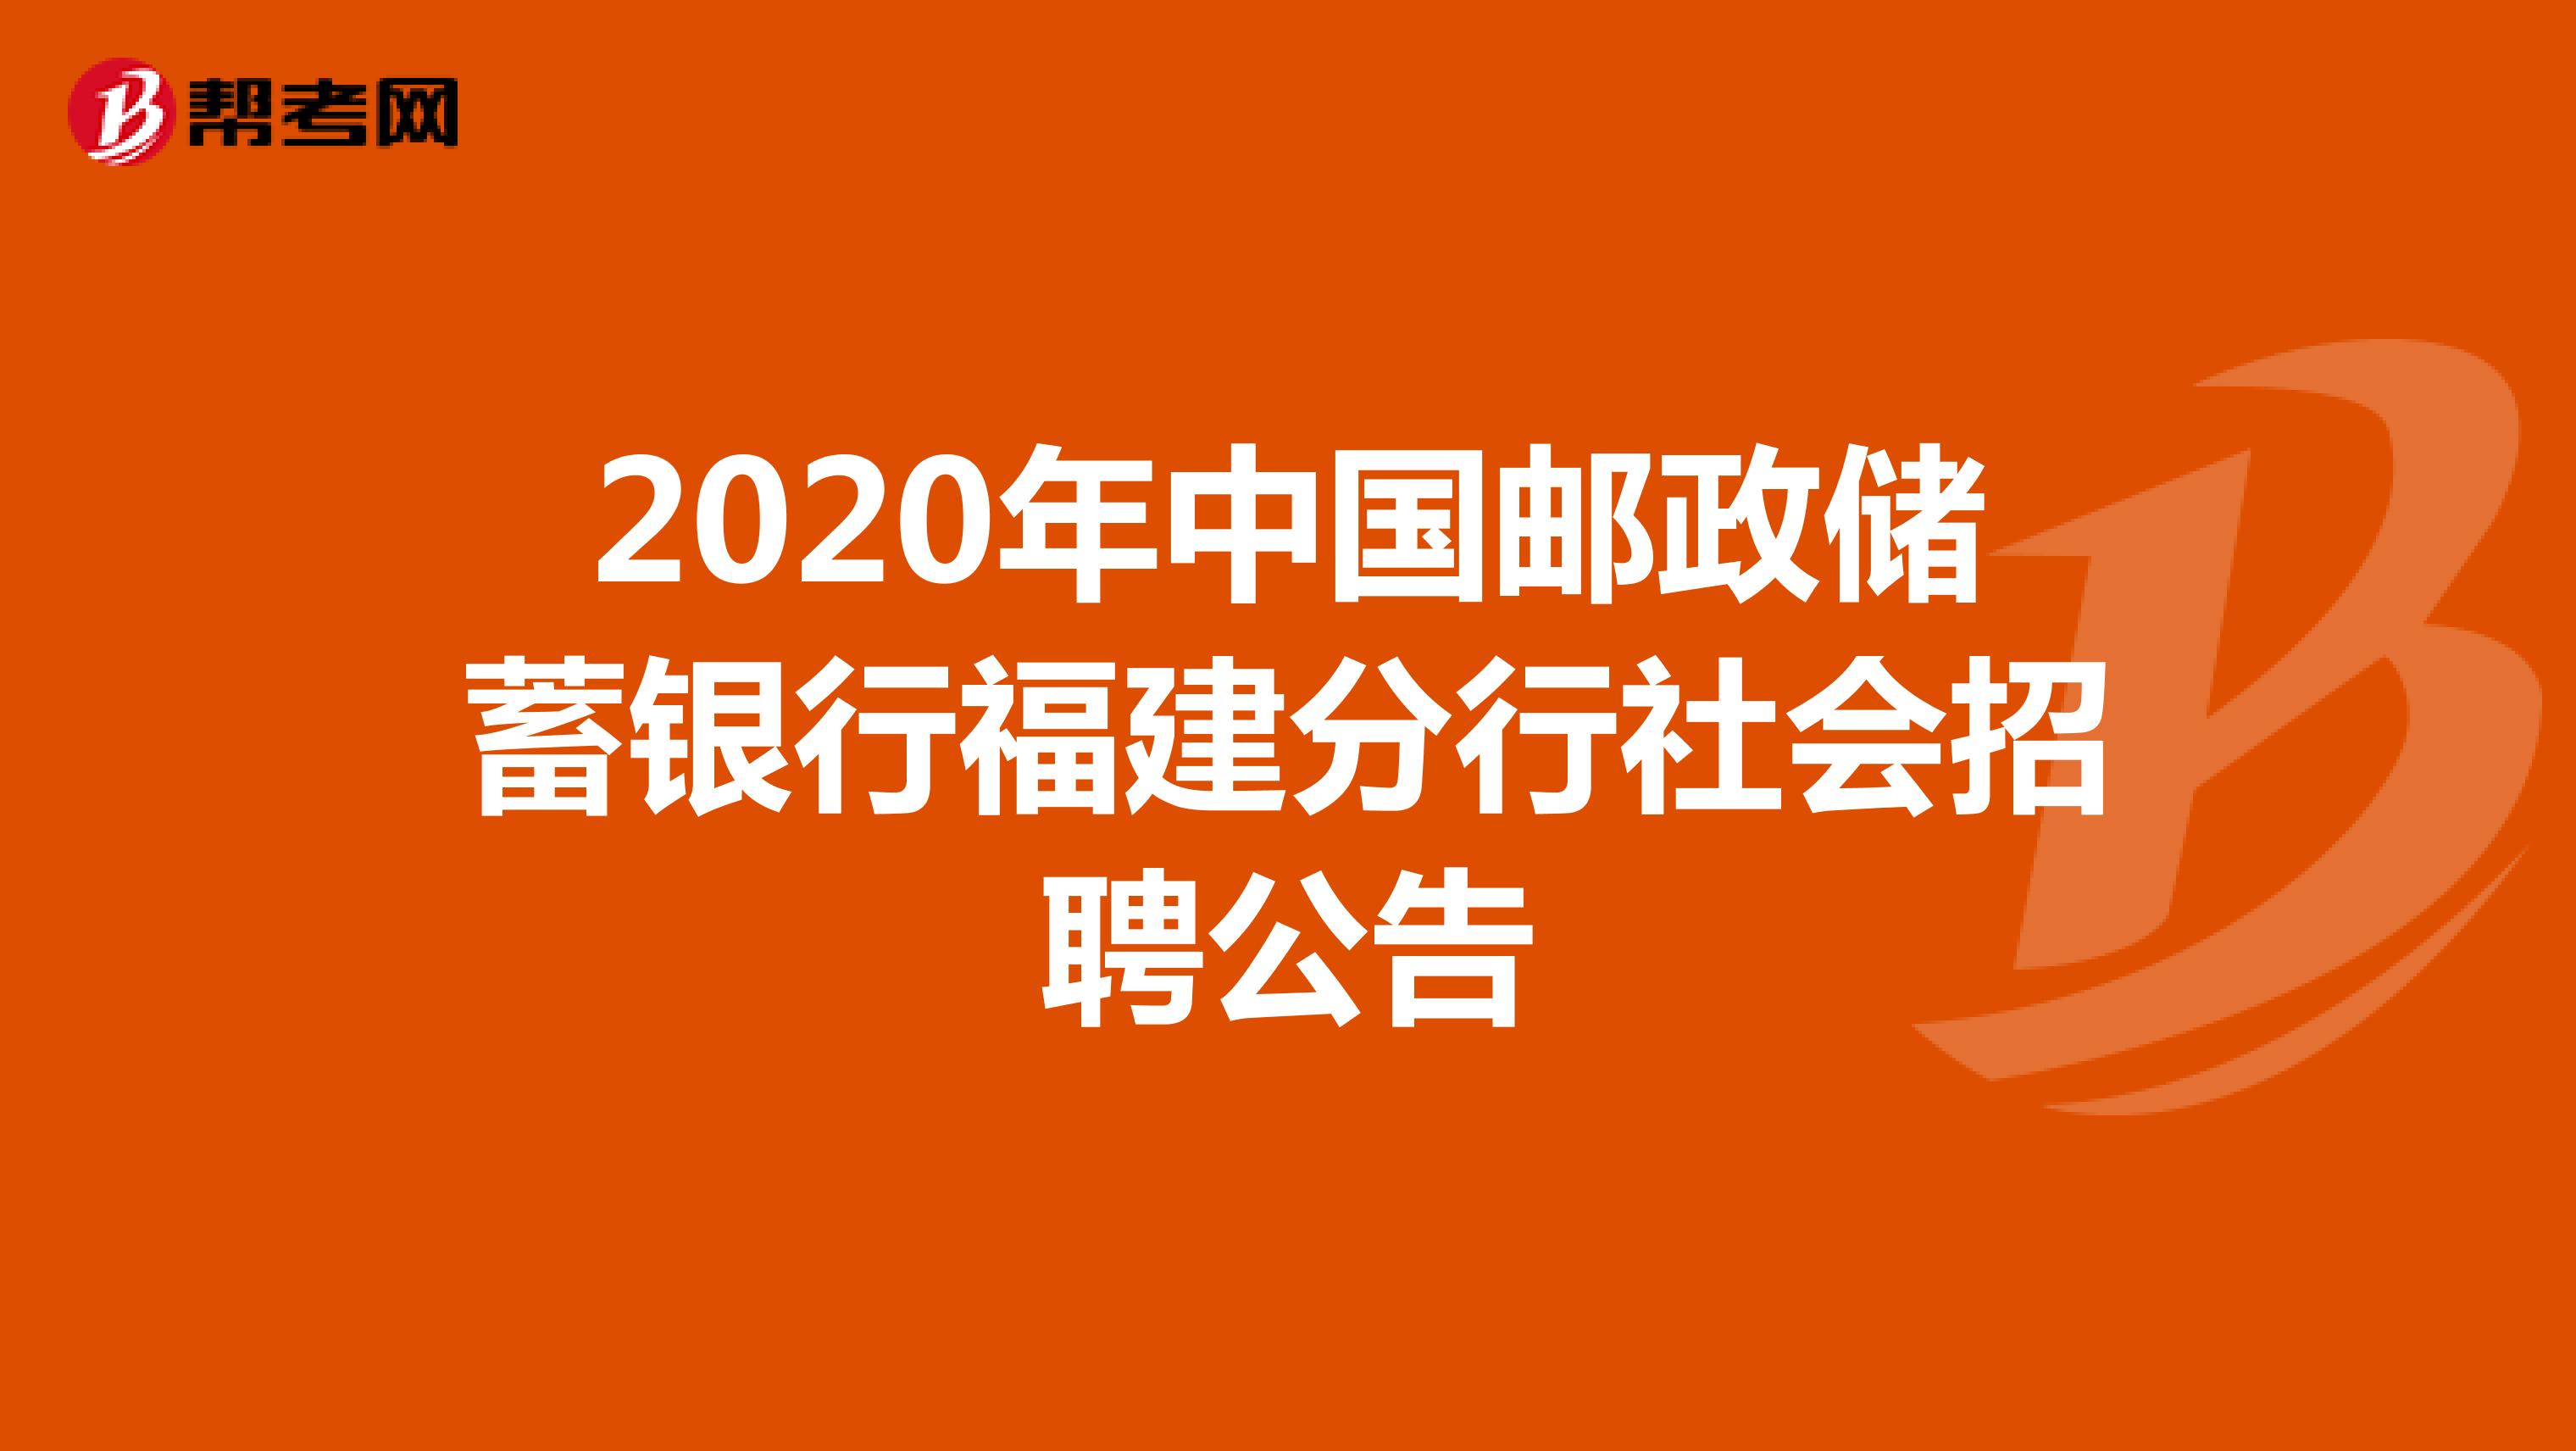 2020年中国邮政储蓄银行福建分行社会招聘公告